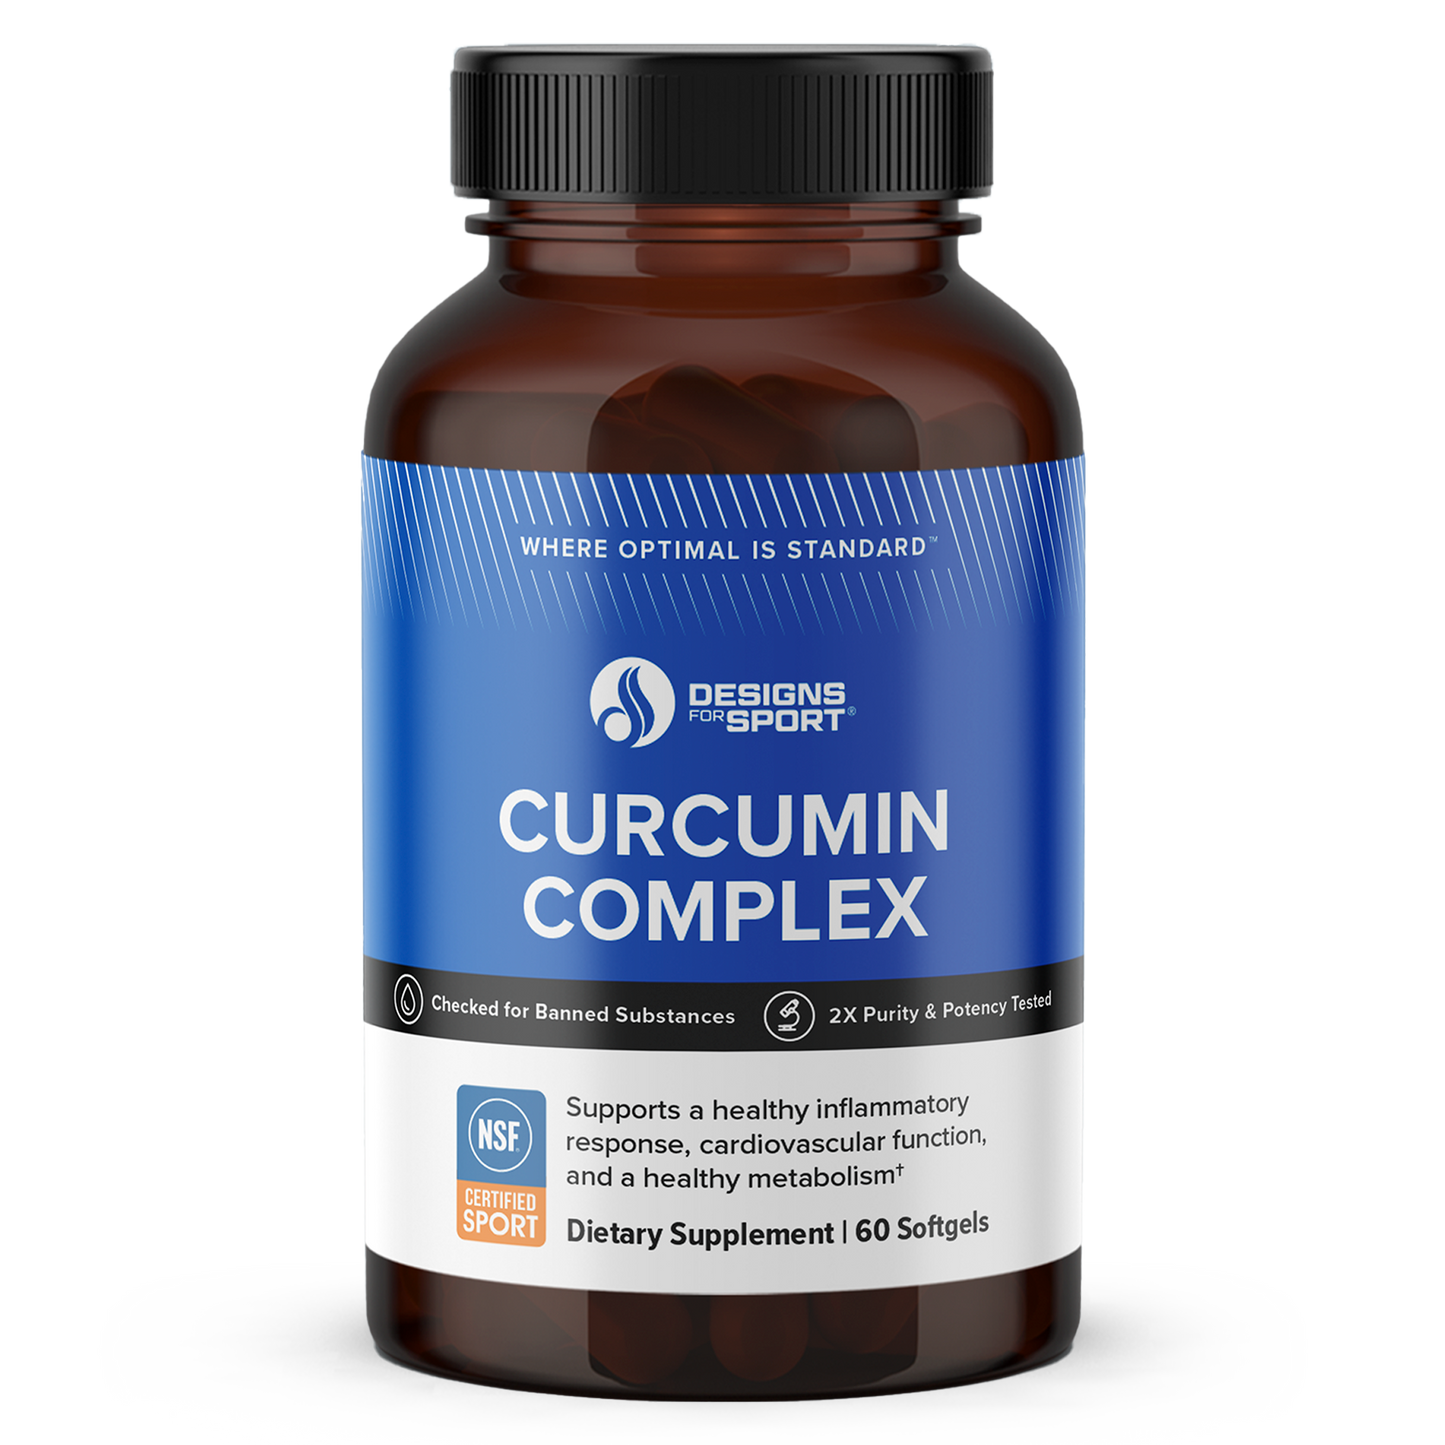 CURCUMIN COMPLEX SAVE 10%